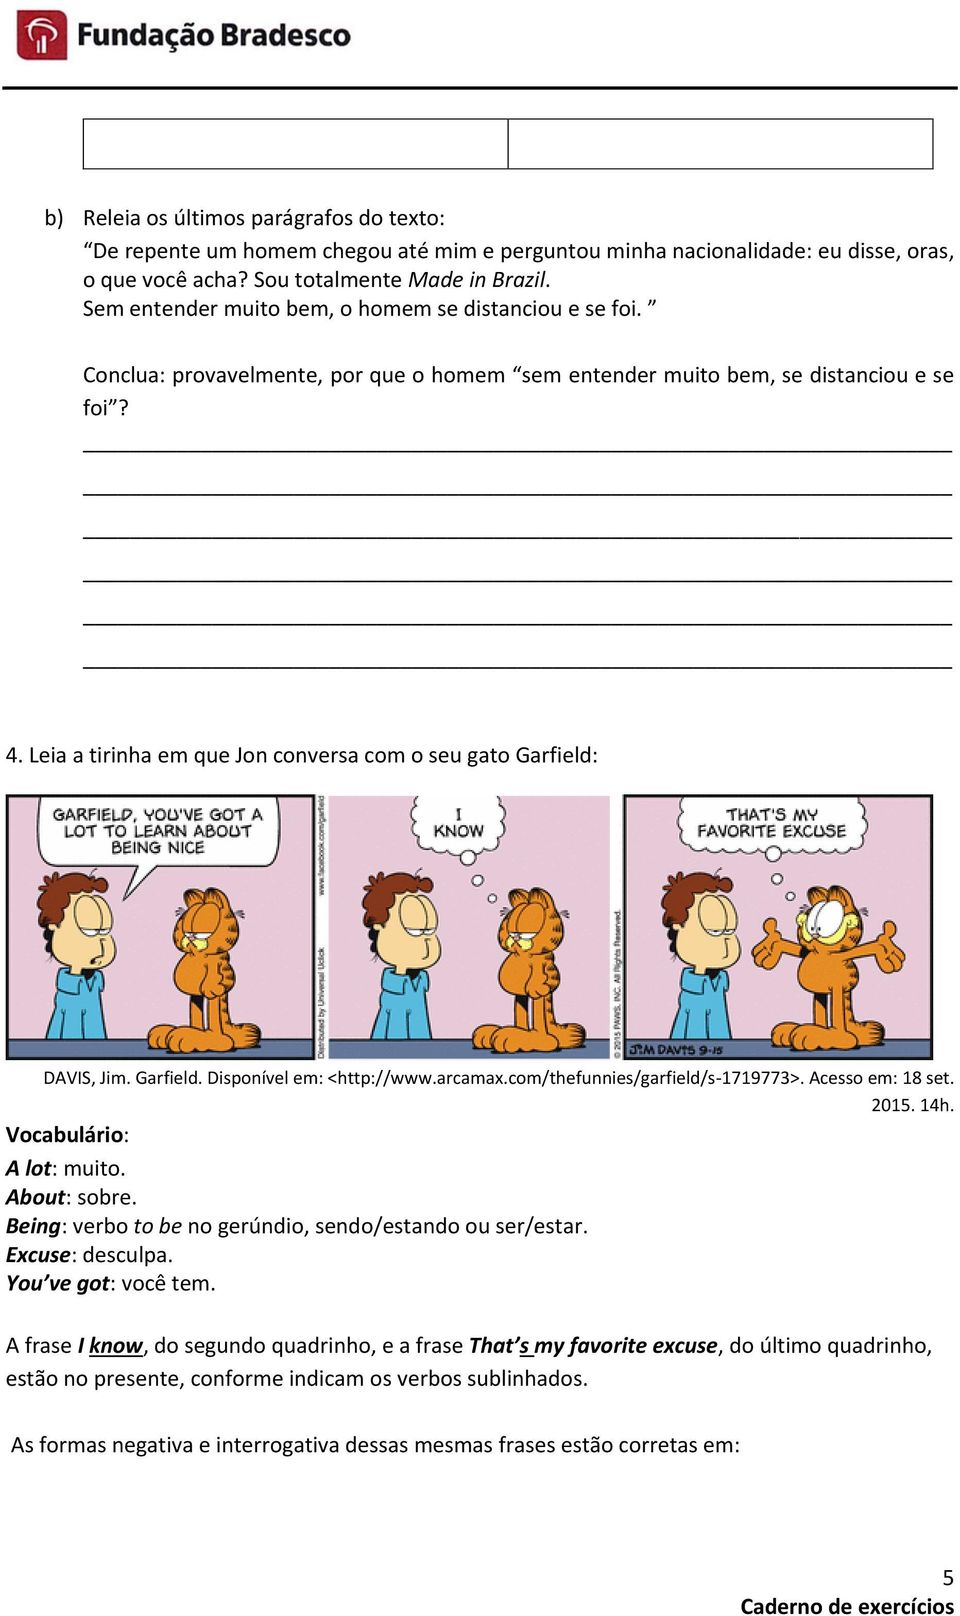 Leia a tirinha em que Jon conversa com o seu gato Garfield: DAVIS, Jim. Garfield. Disponível em: <http://www.arcamax.com/thefunnies/garfield/s-1719773>. Acesso em: 18 set. 2015. 14h.